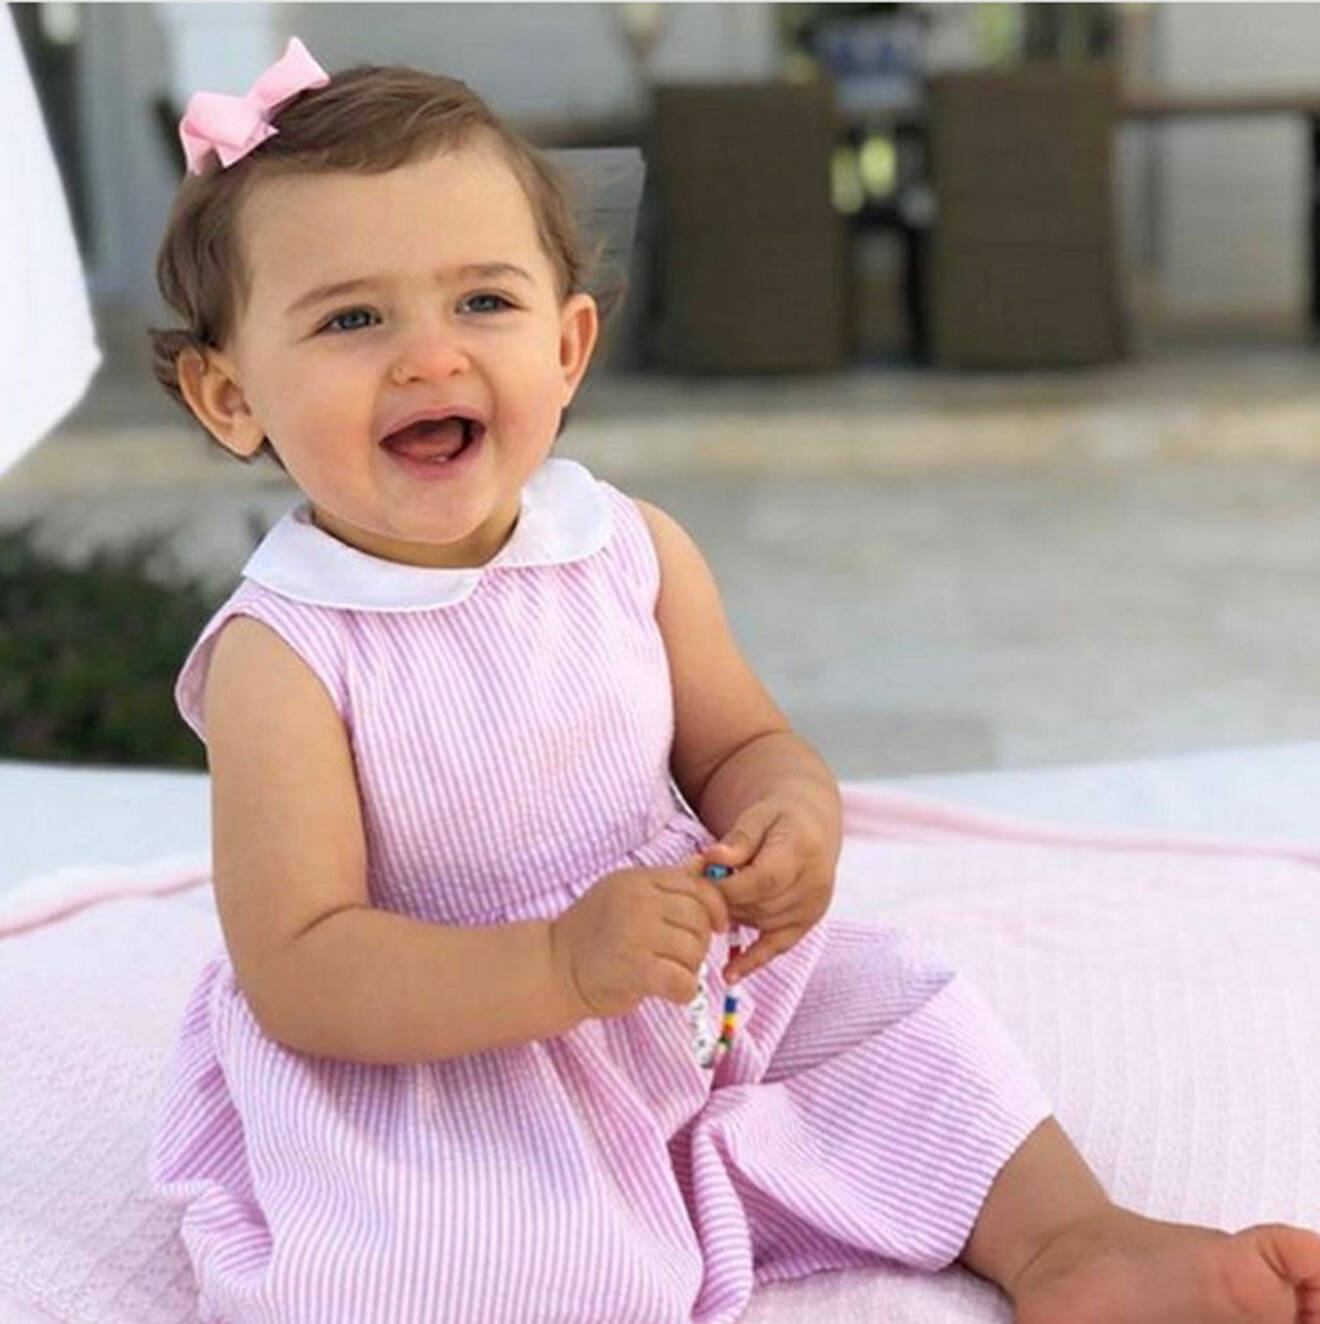 Prinsessan Adrienne på ettårsdagen 2019, i rosa klänning.